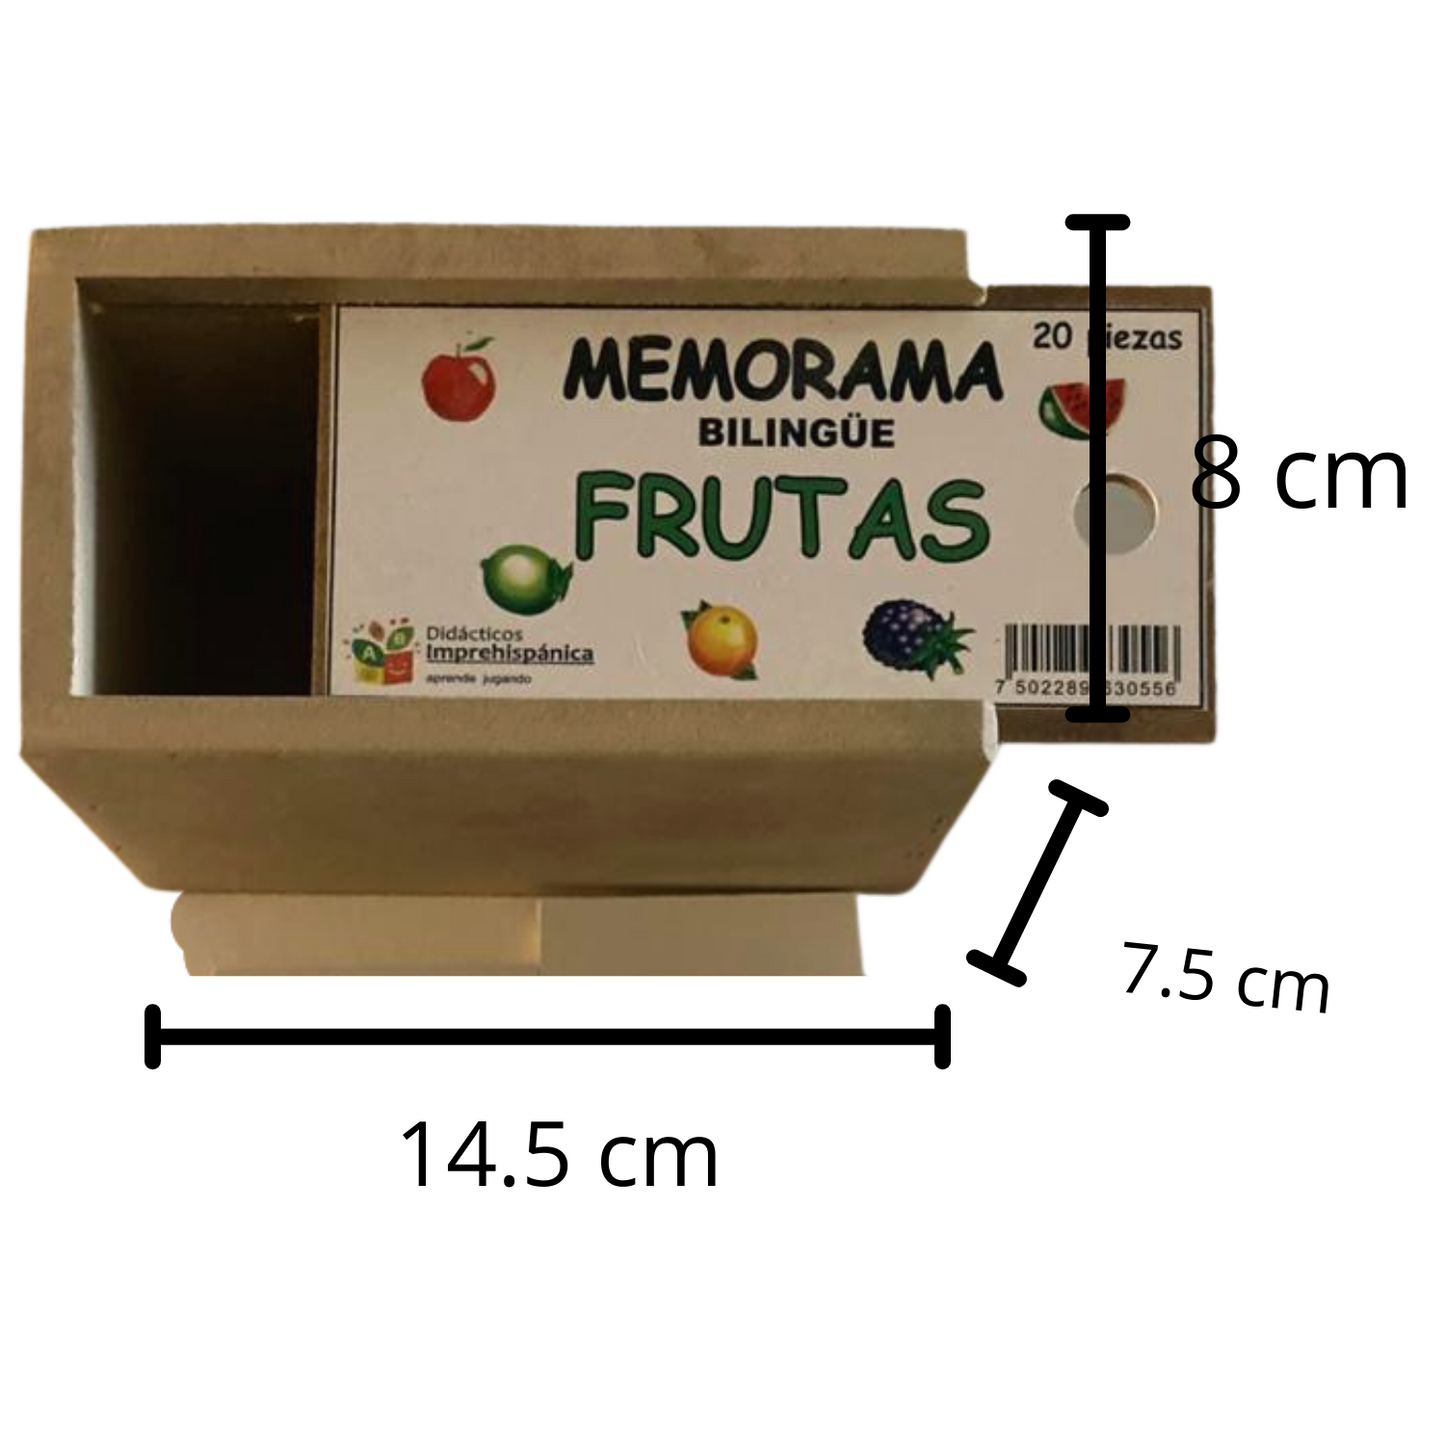 Juego De Memoria De Frutas Bilingüe Ingles Y Español